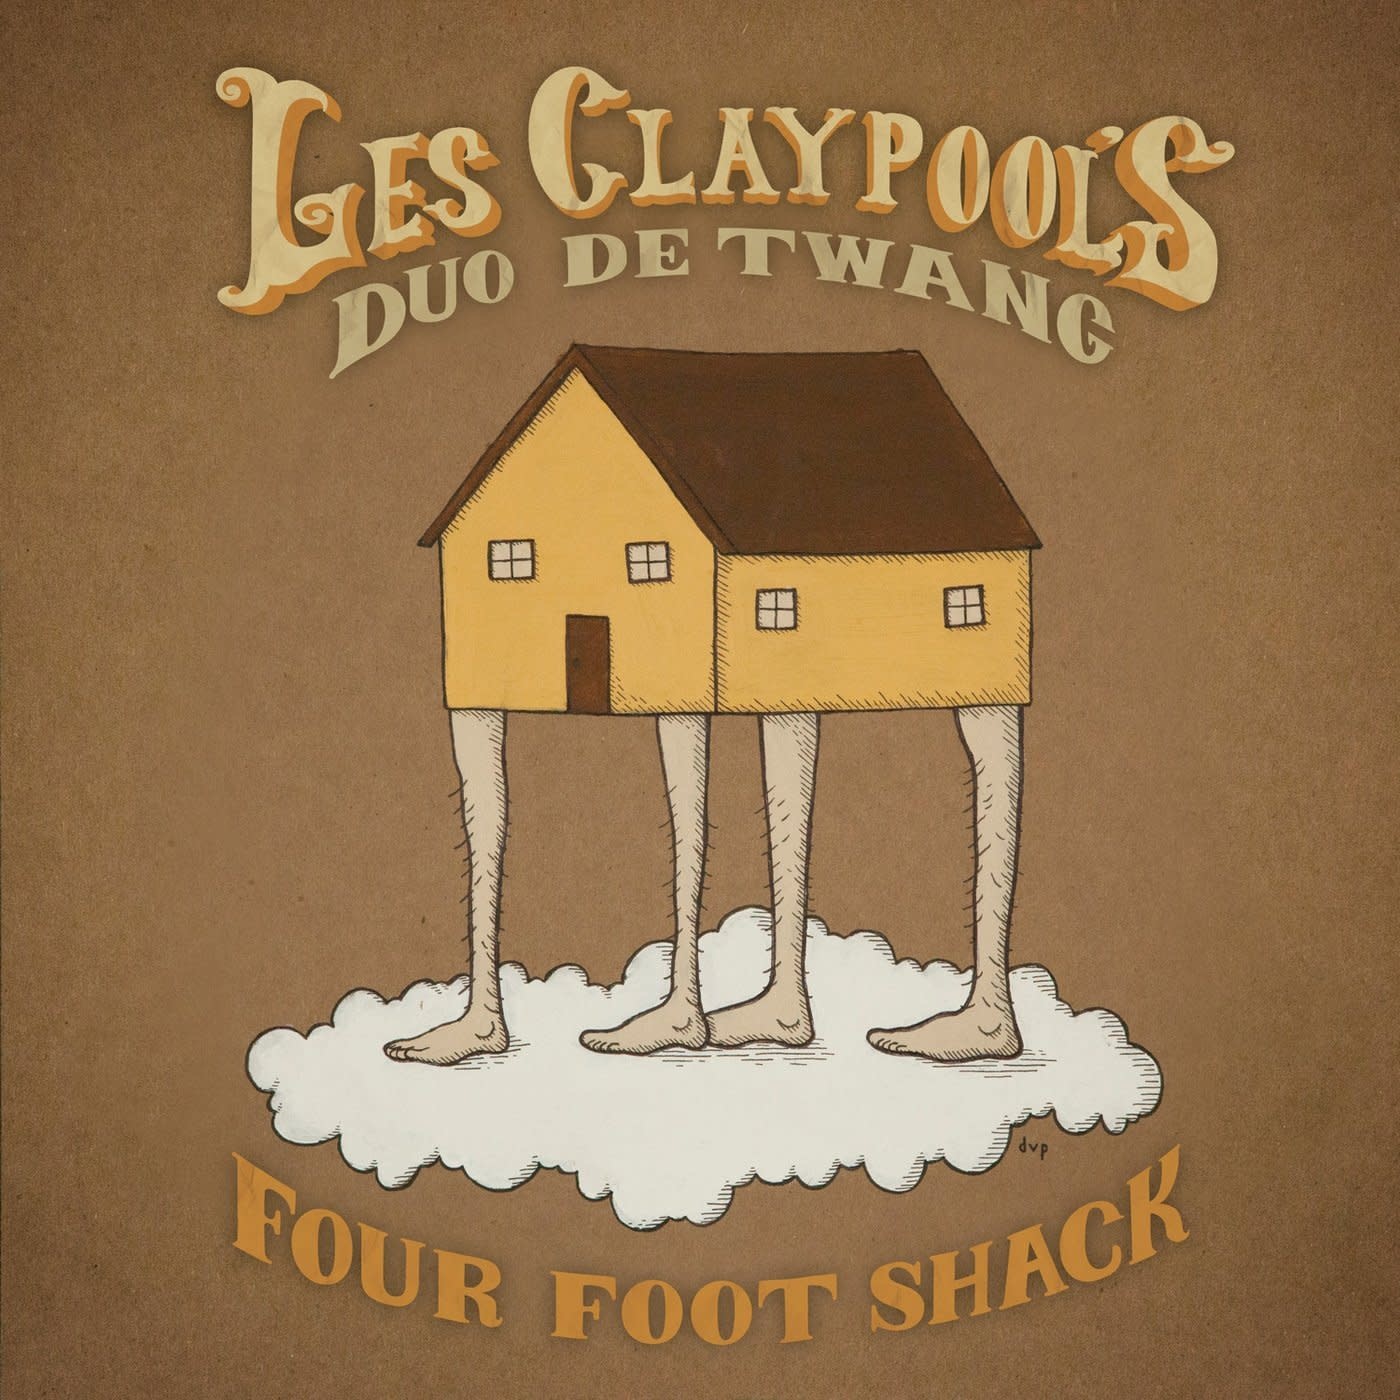 Les Claypool's Duo De Twang – Four Foot Shack